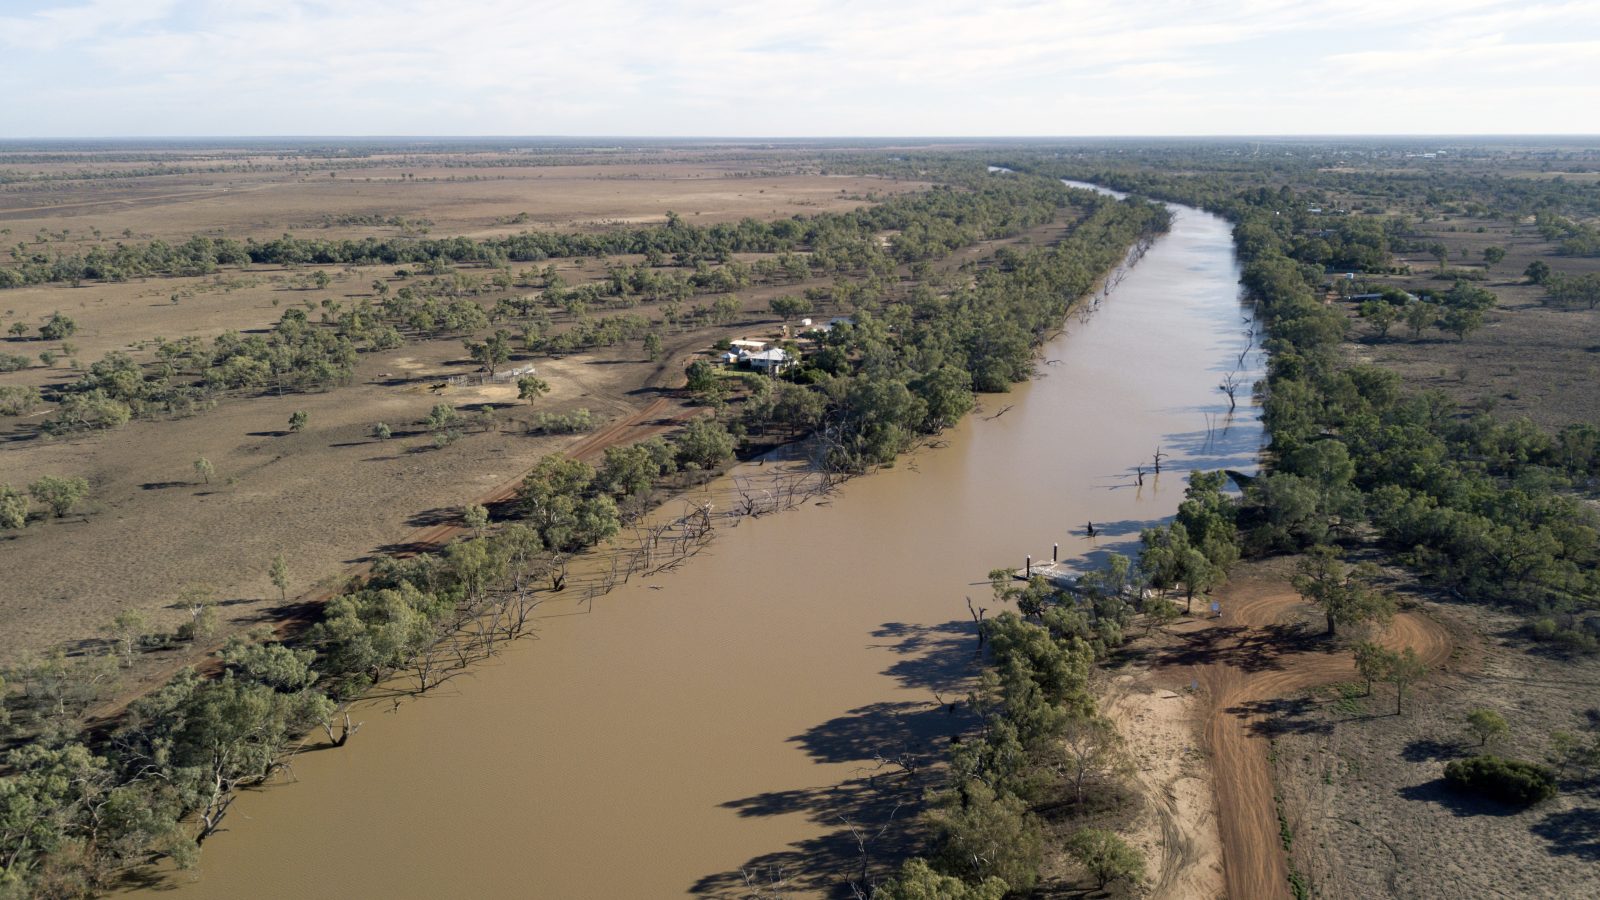 The Paroo river at Cunnamulla Queensland, Australia.